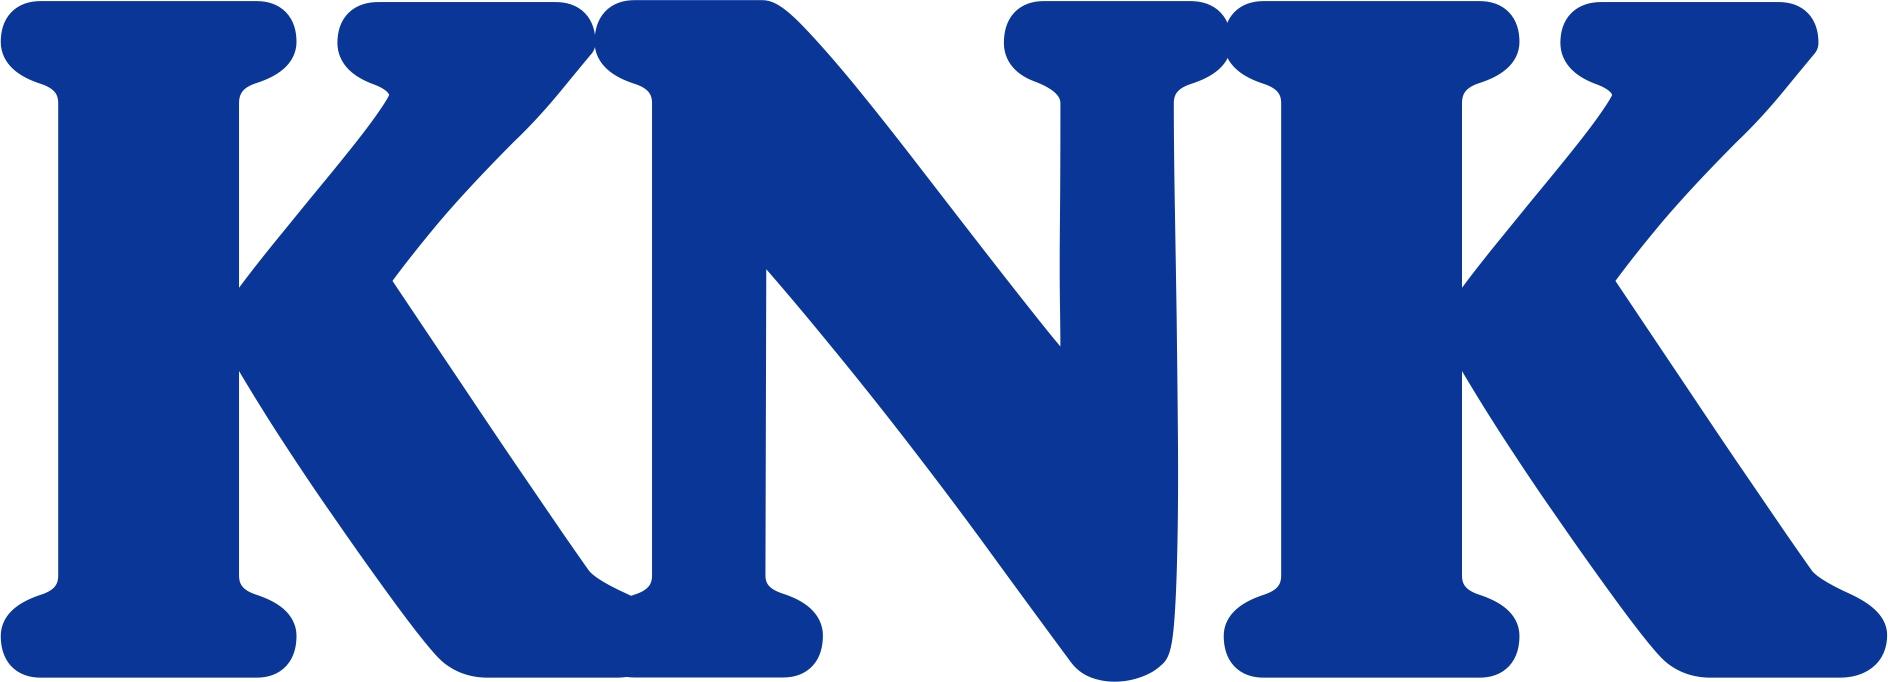 Knk Logo - KNK Logo Space Coast Post